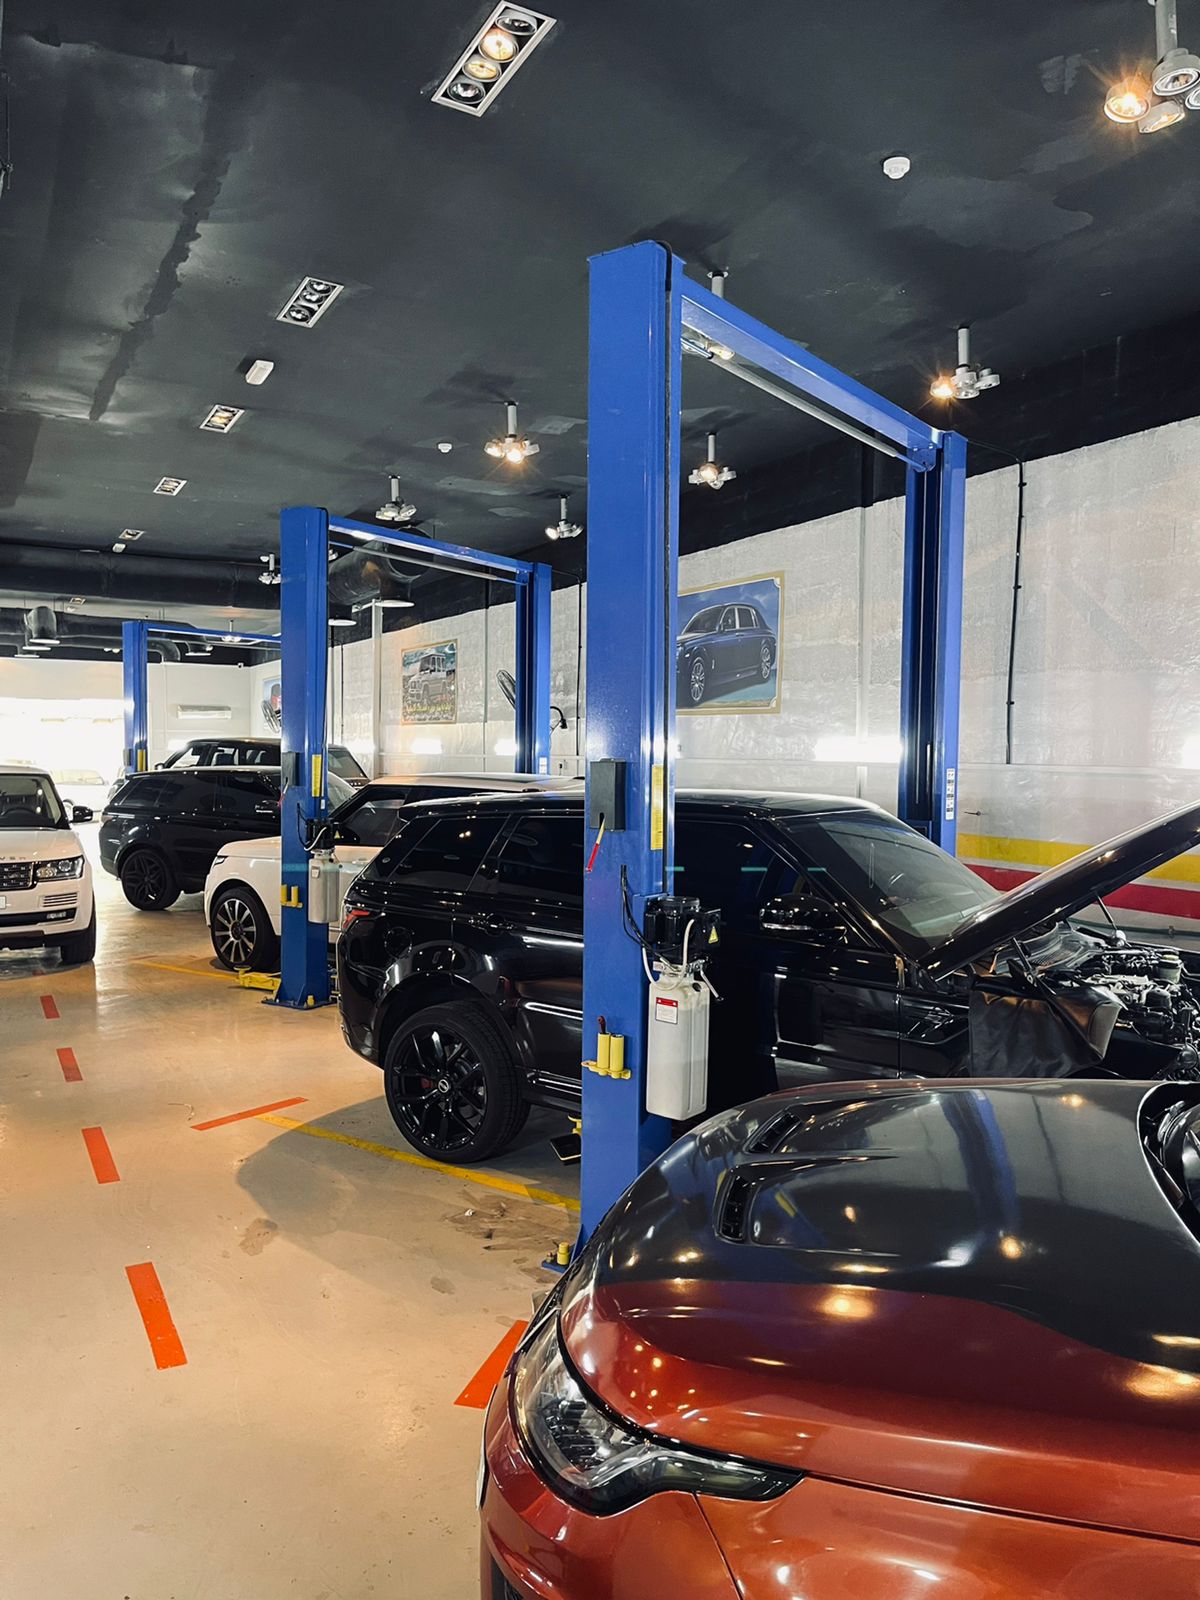 Range Rover Repair Center In Dubai